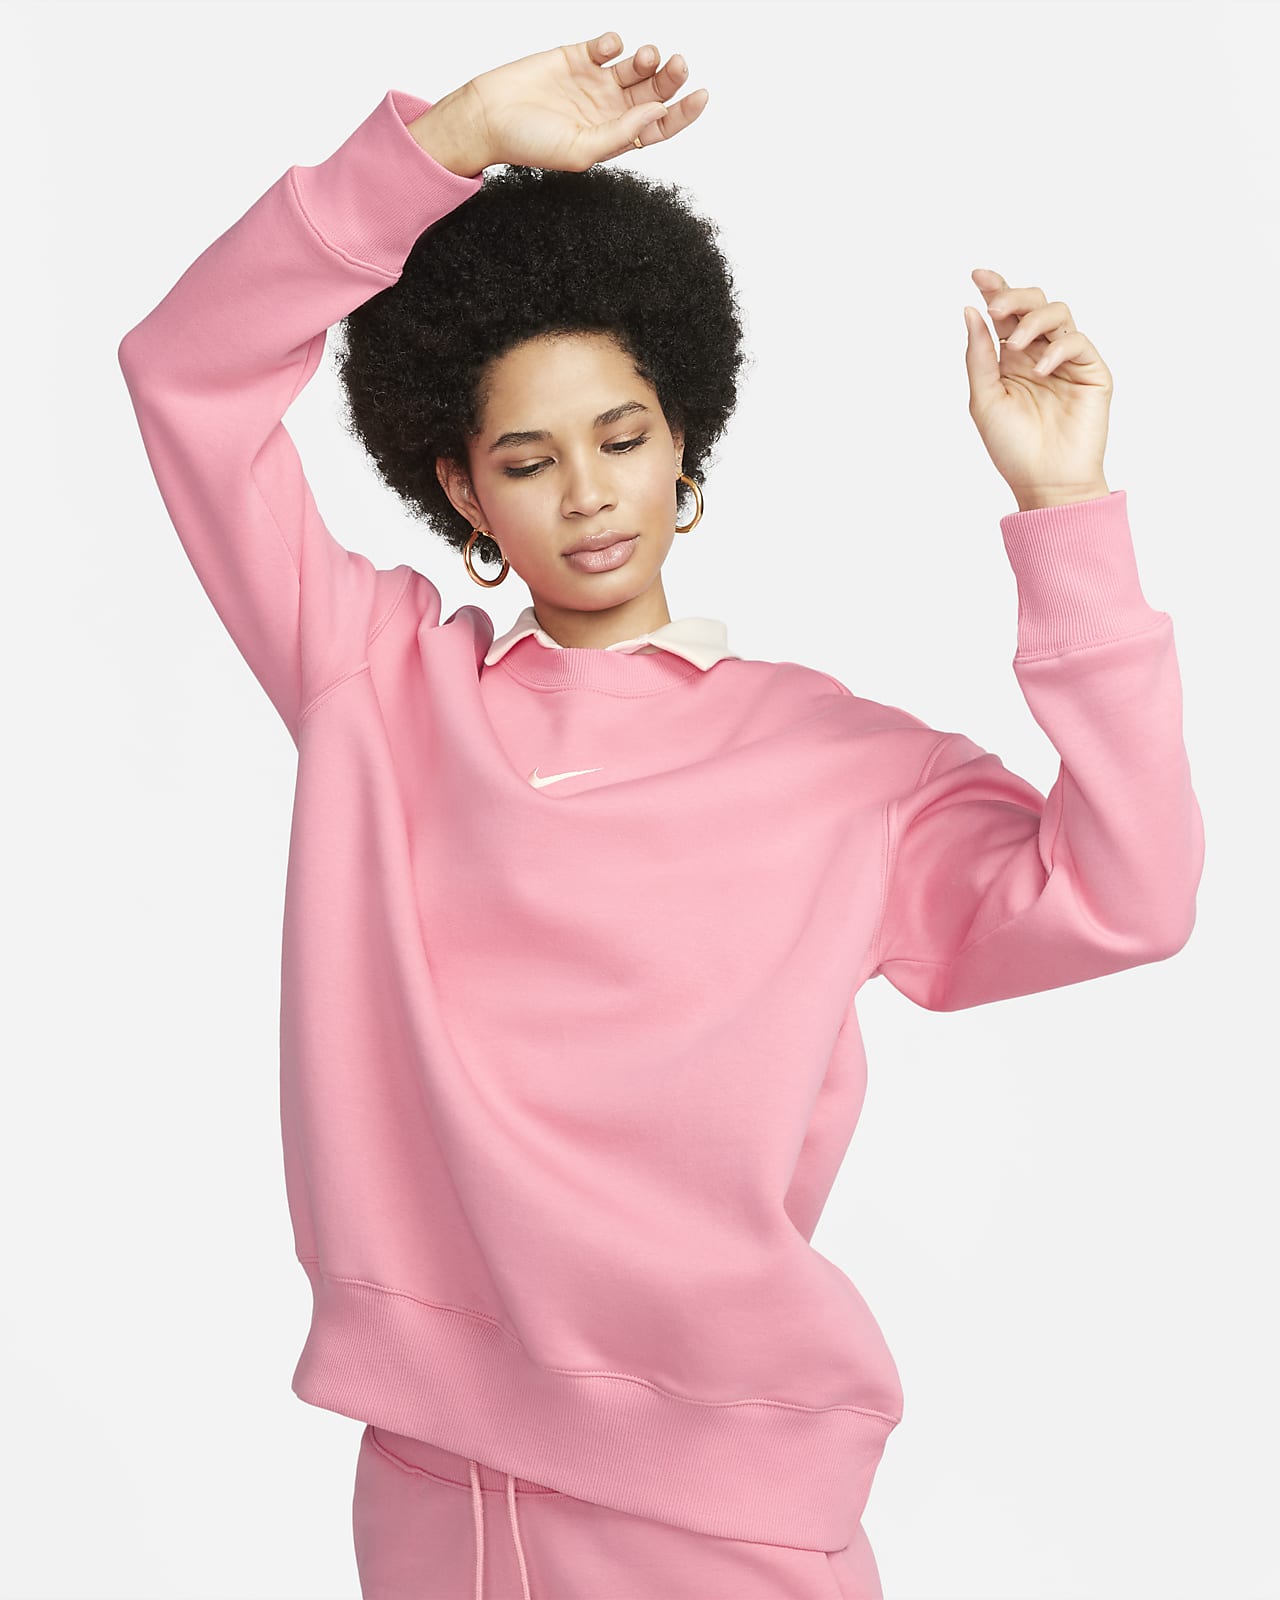 Nike Women's Phoeix Fleece Oversized Crew Sweatshirt